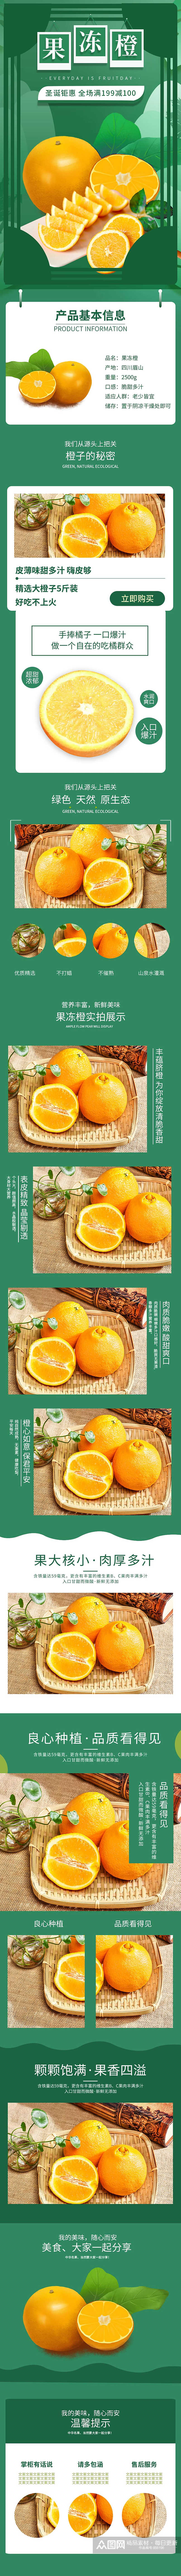 电商水果生鲜果冻橙子爱媛橙柑橘脐橙详情页素材